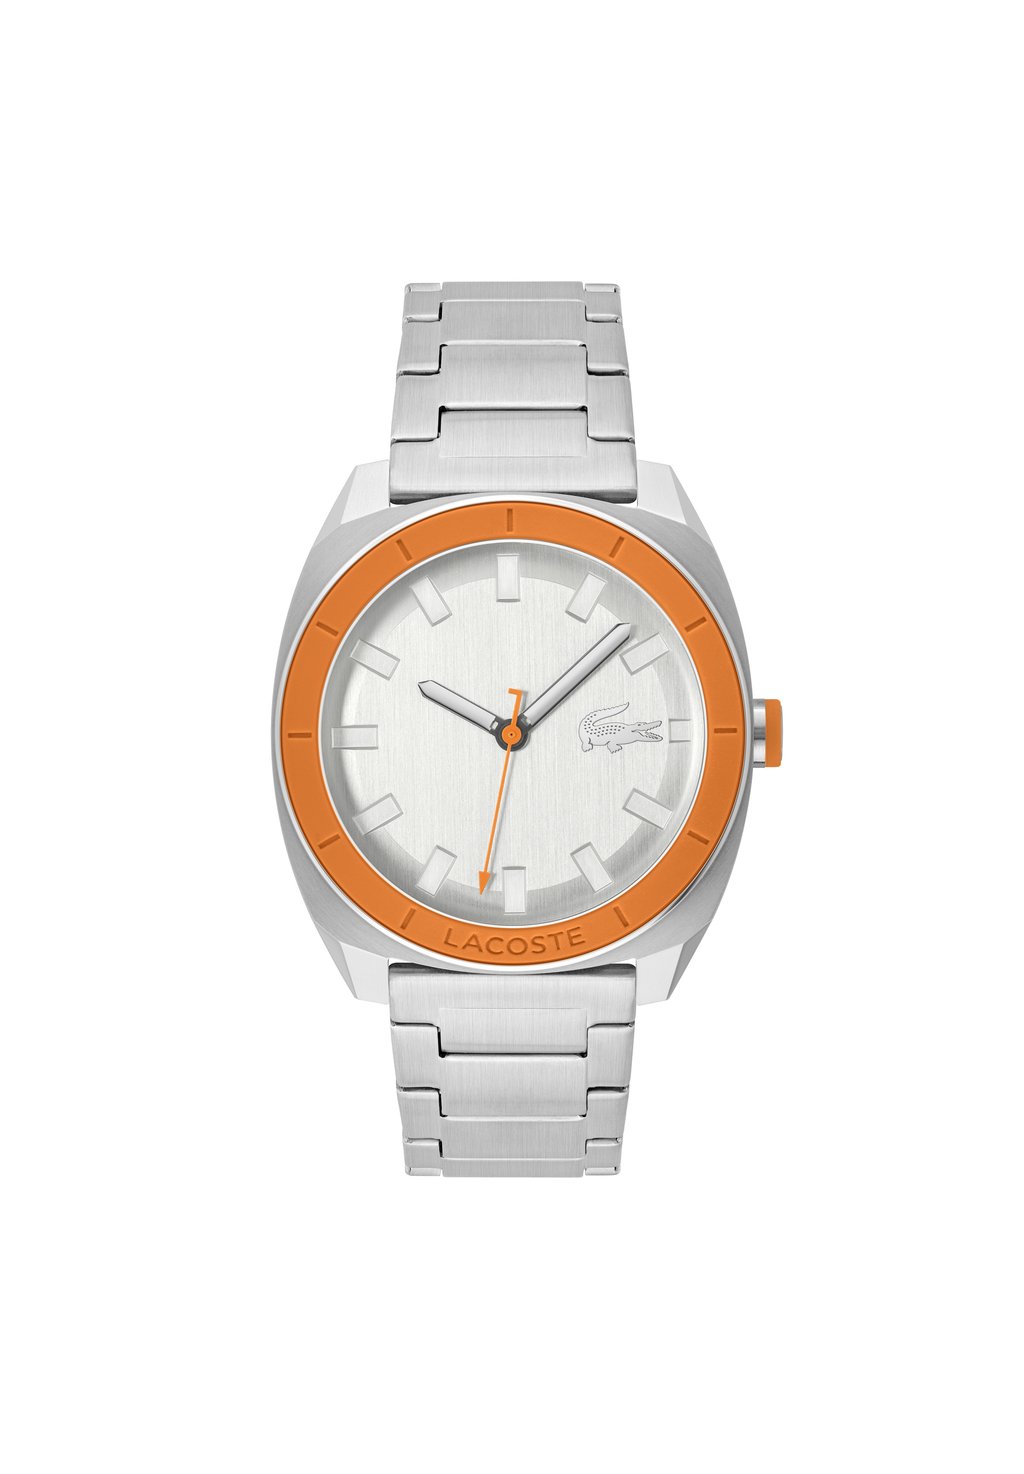 Часы Sprint Lacoste, цвет silber orange silber silber фото